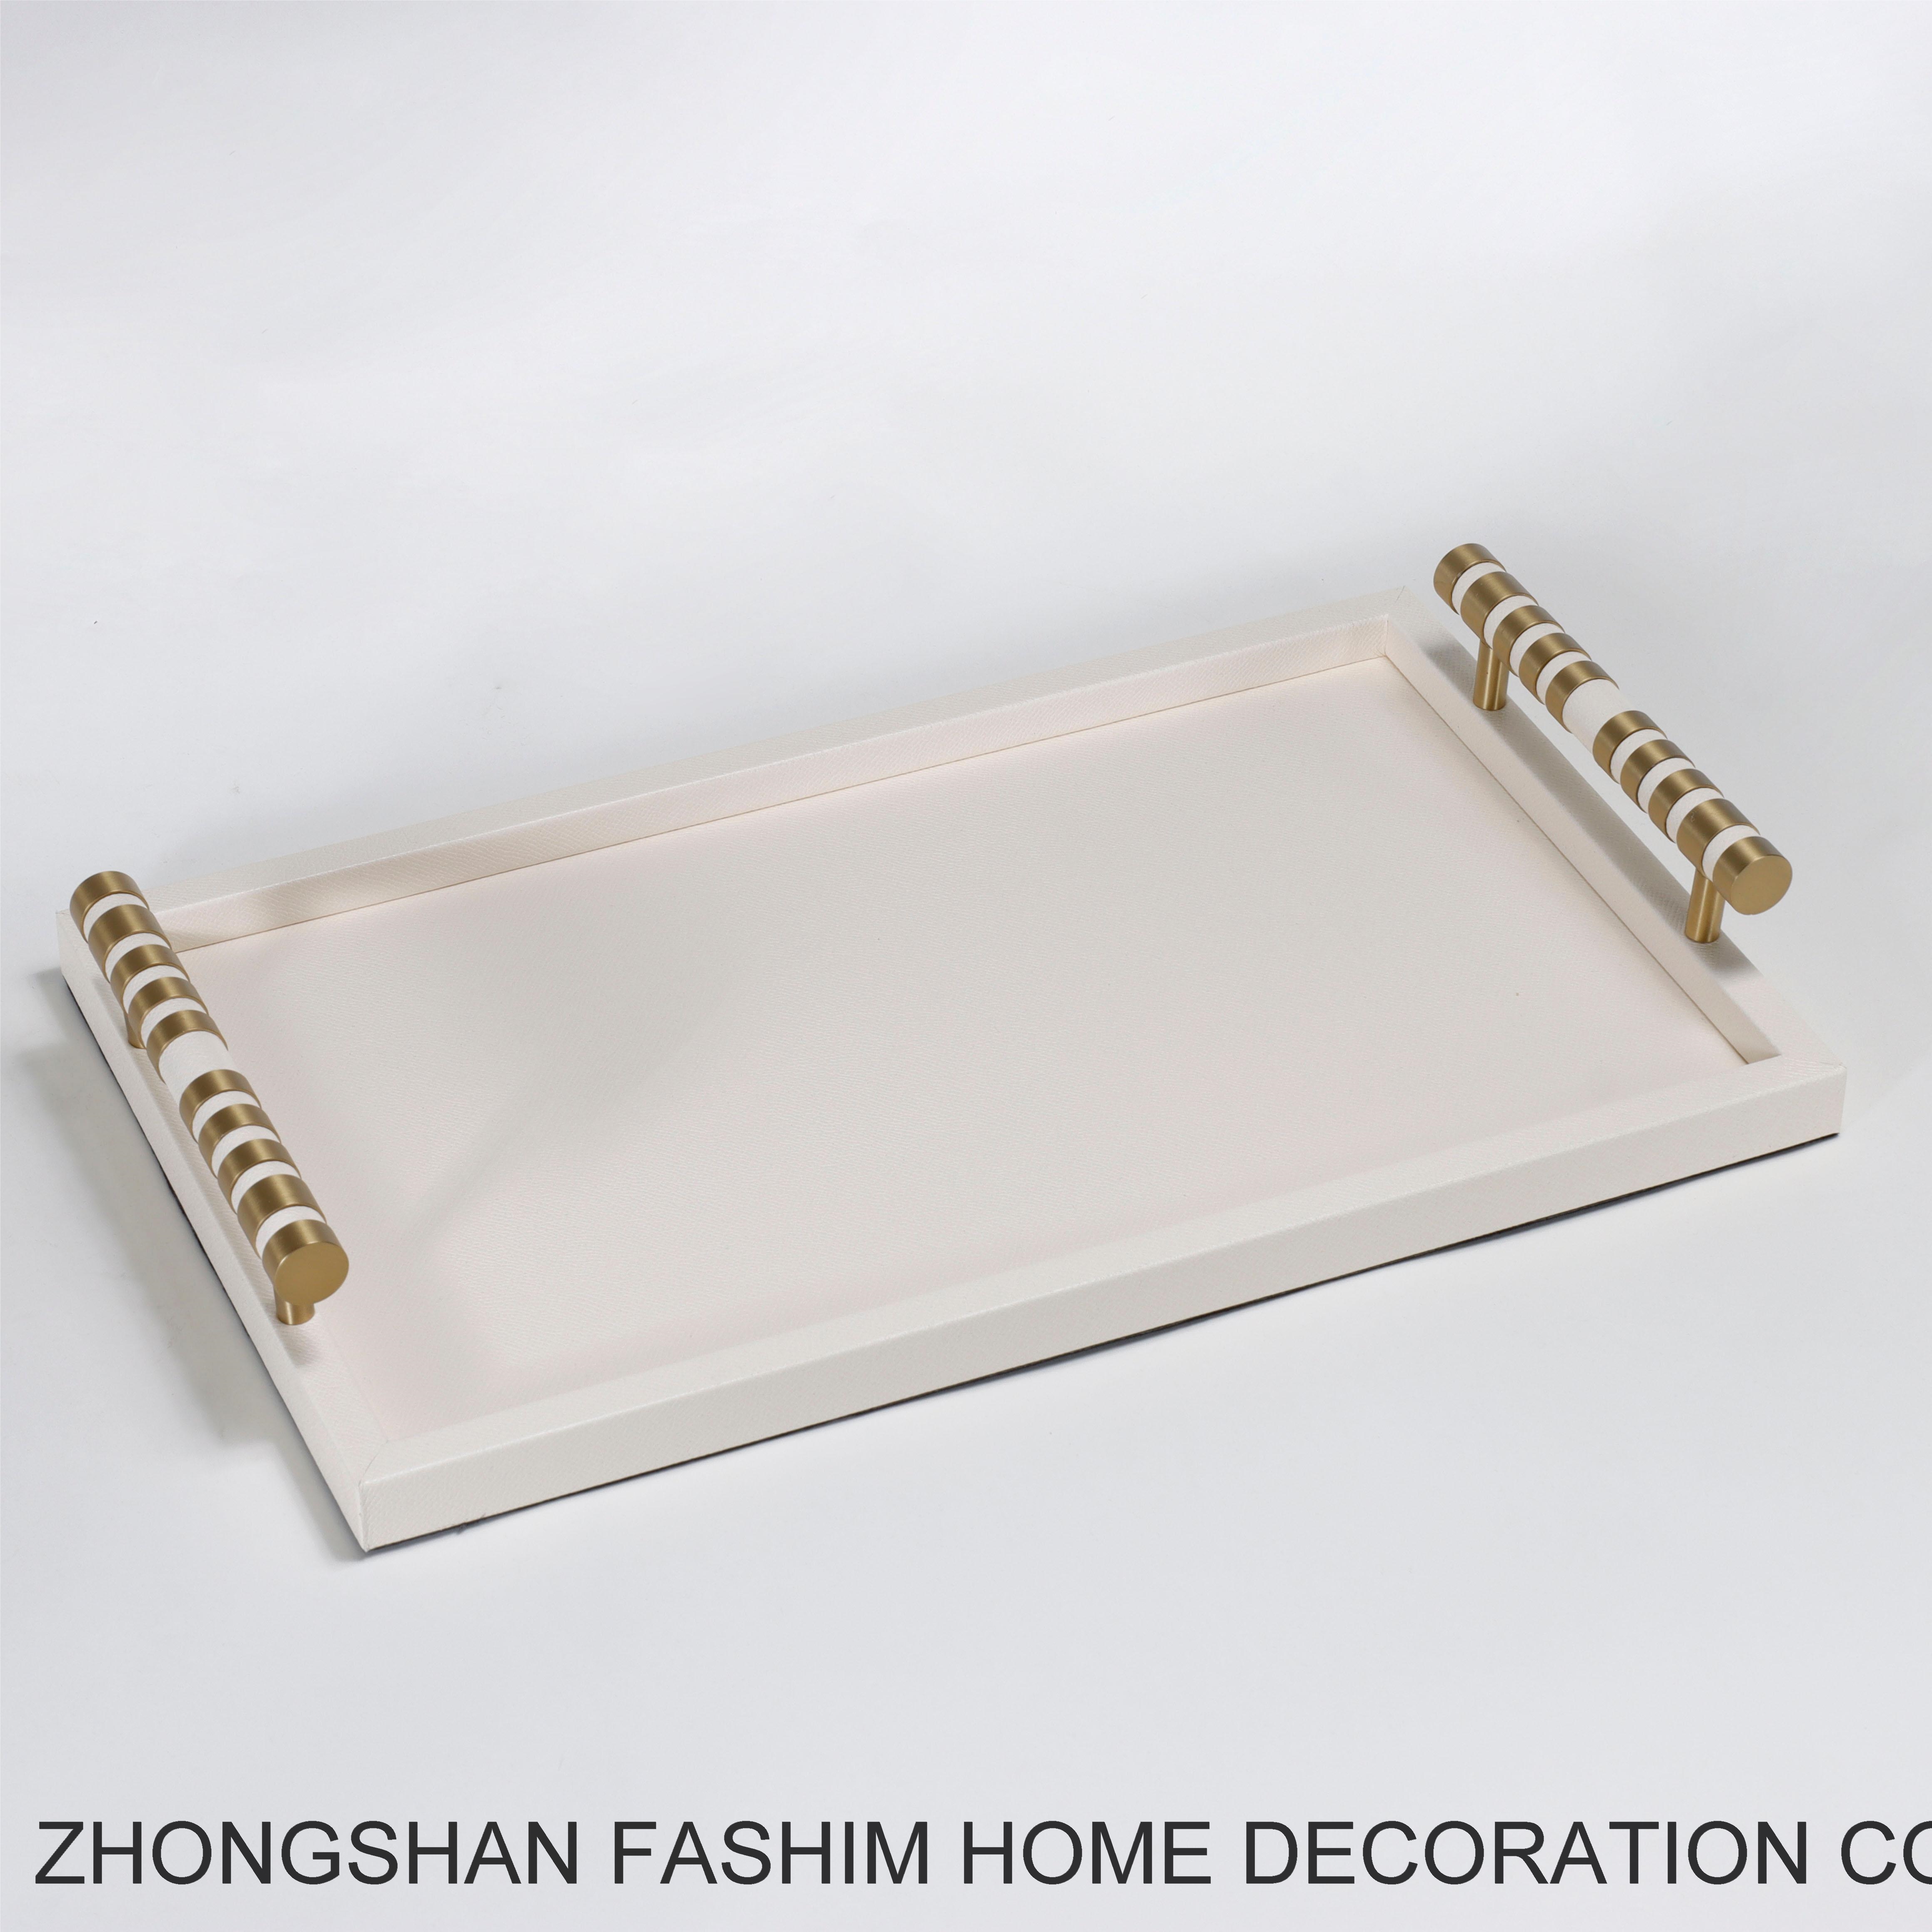 Fashimdecor Elegant home decoration and practical tray